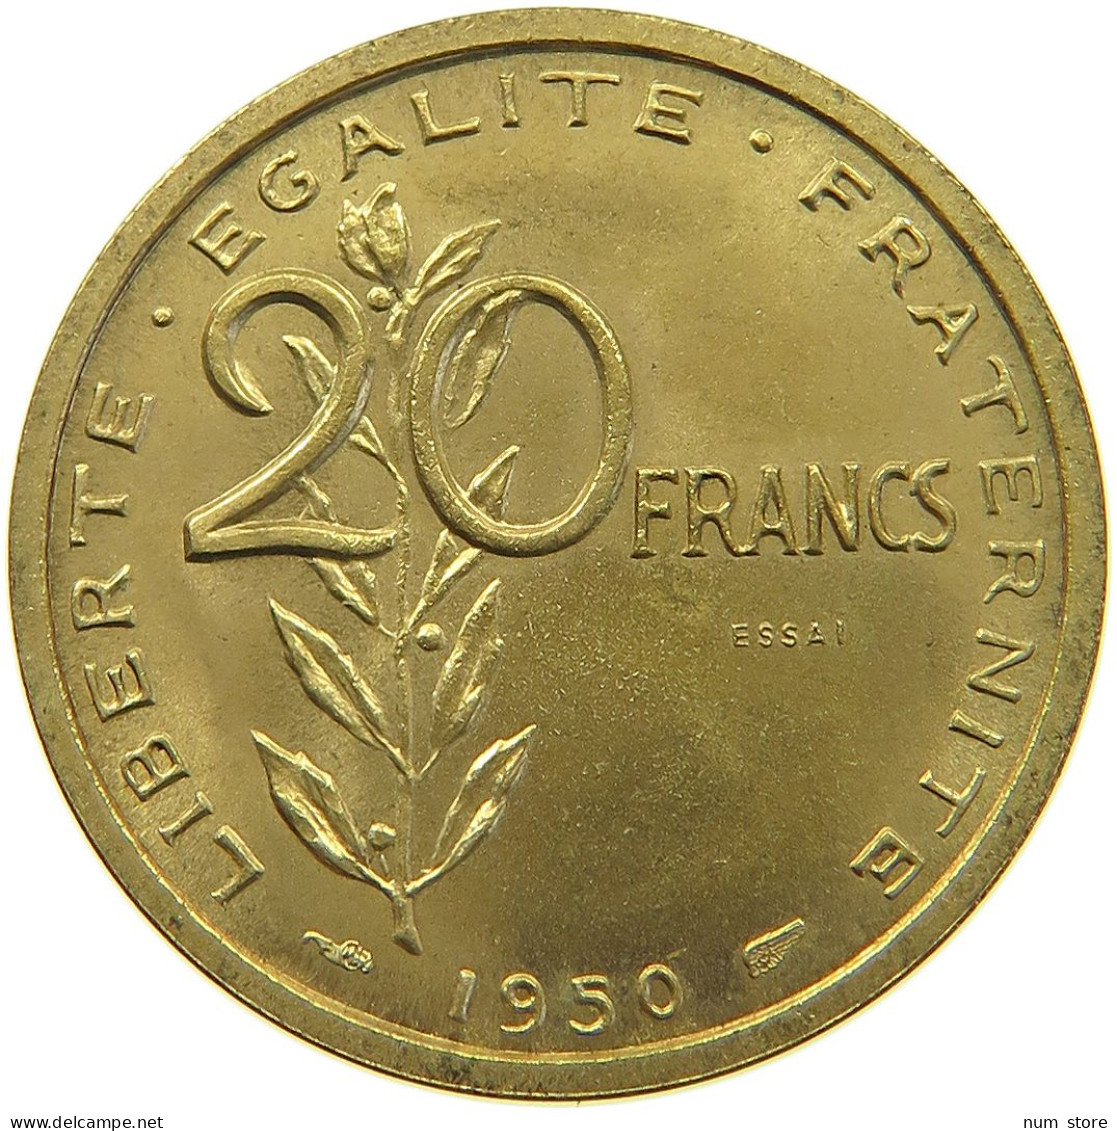 FRANCE 20 FRANCS 1950 20 FRANCS 1950 ESSAI GUZMAN RARE #T079 0159 - 20 Francs